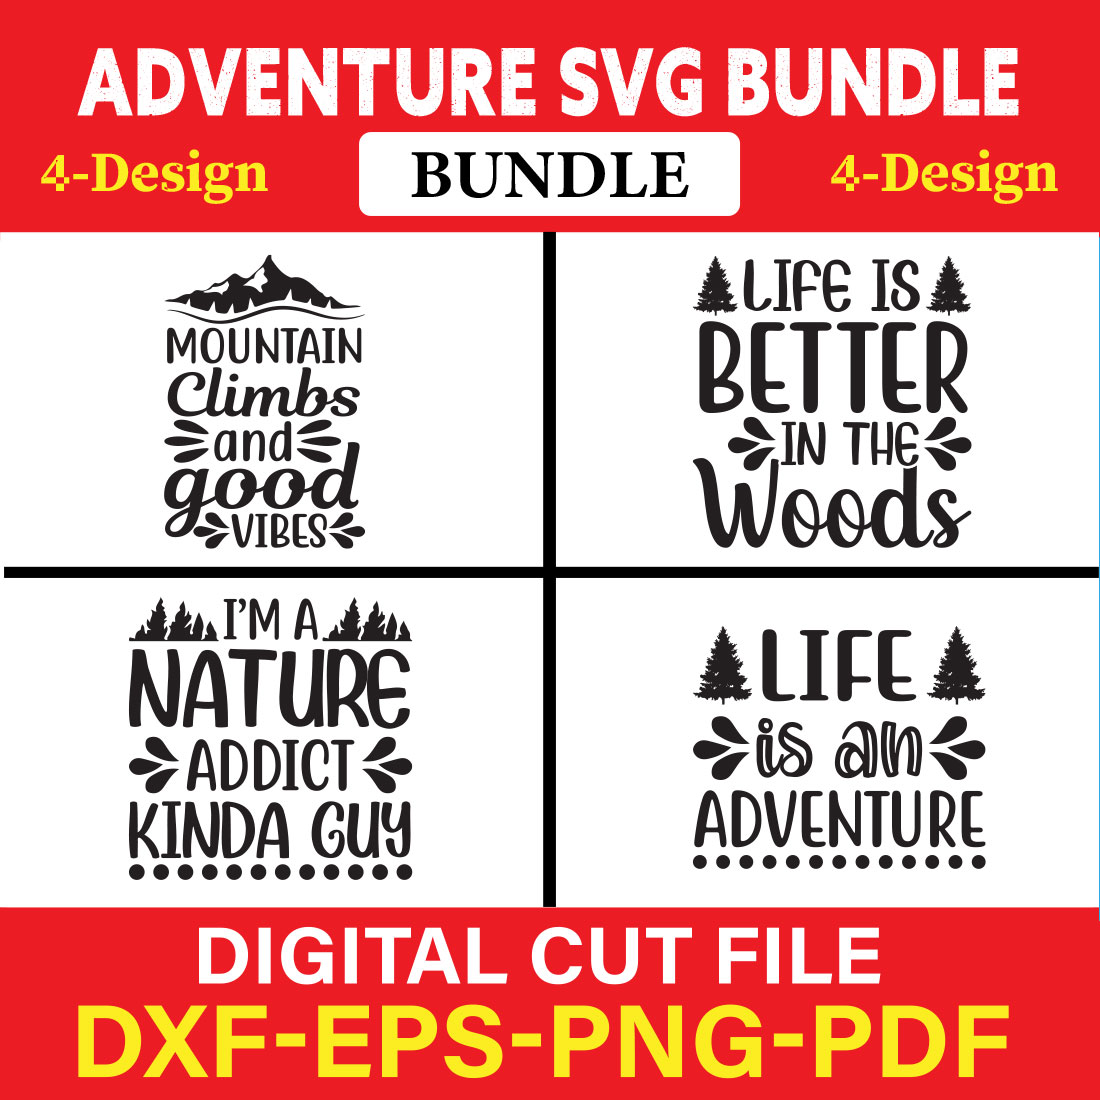 Adventure T-shirt Design Bundle Vol-3 cover image.